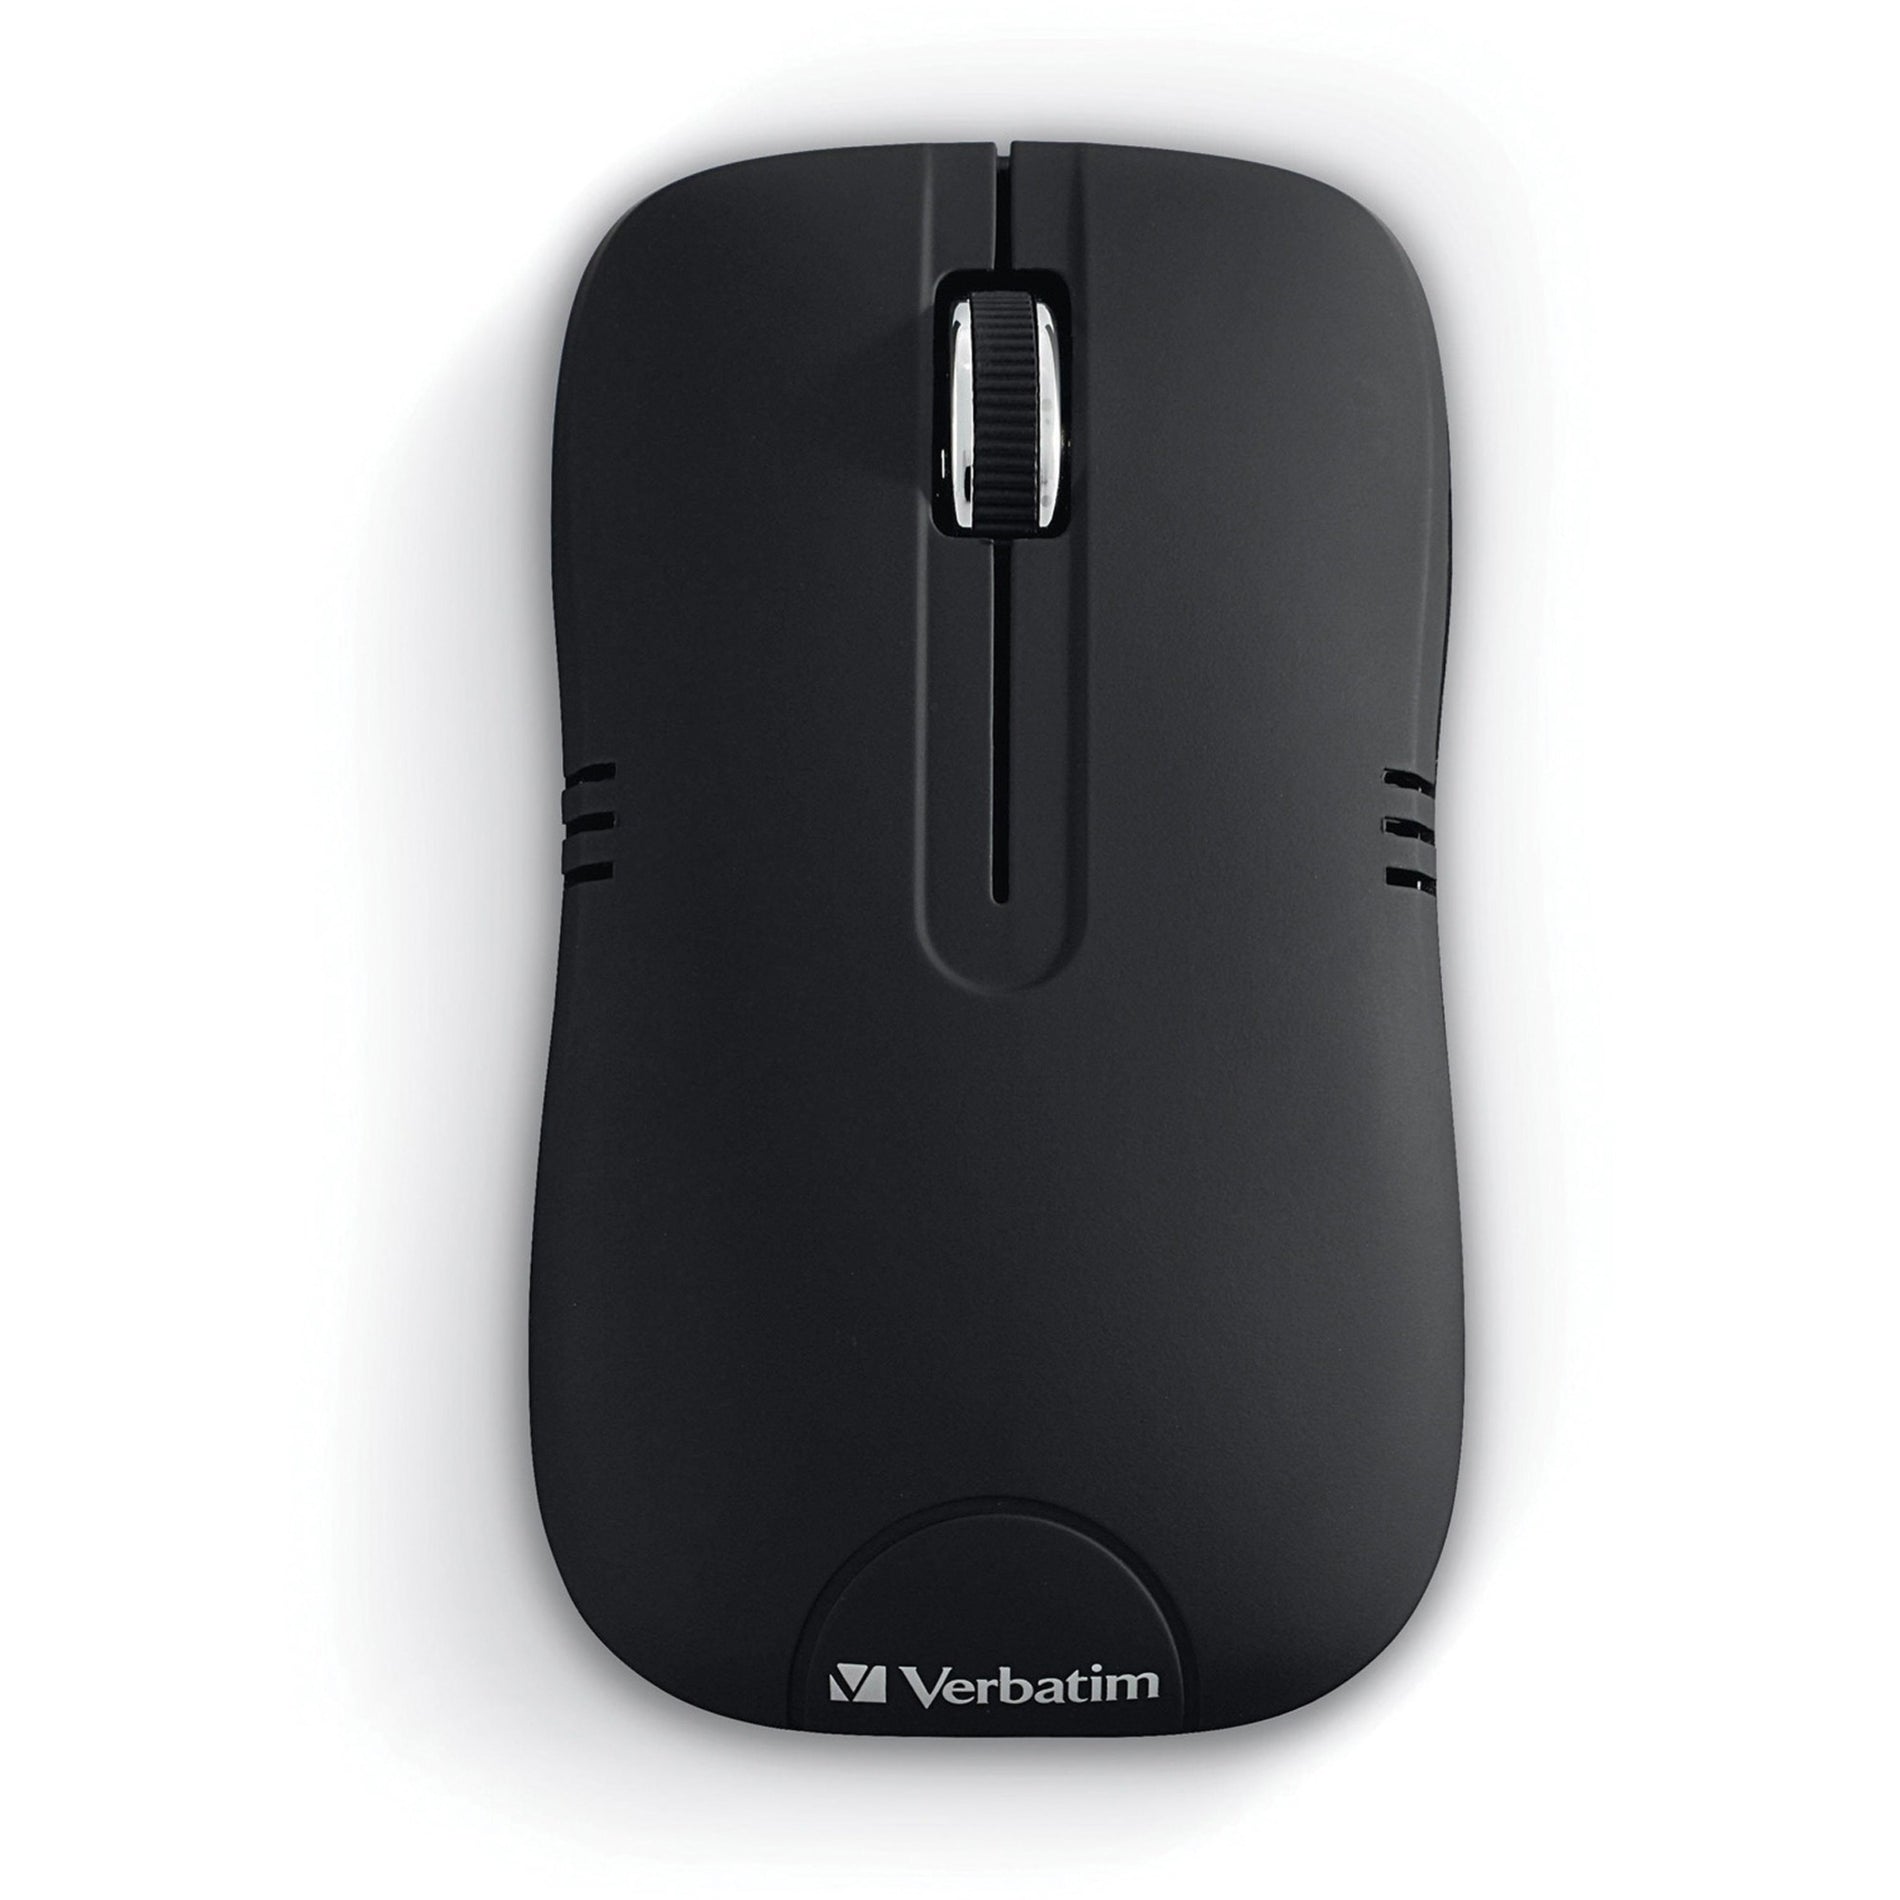 Verbatim 99765 Wireless Notebook Optical Mouse Commuter Series - Matte Black